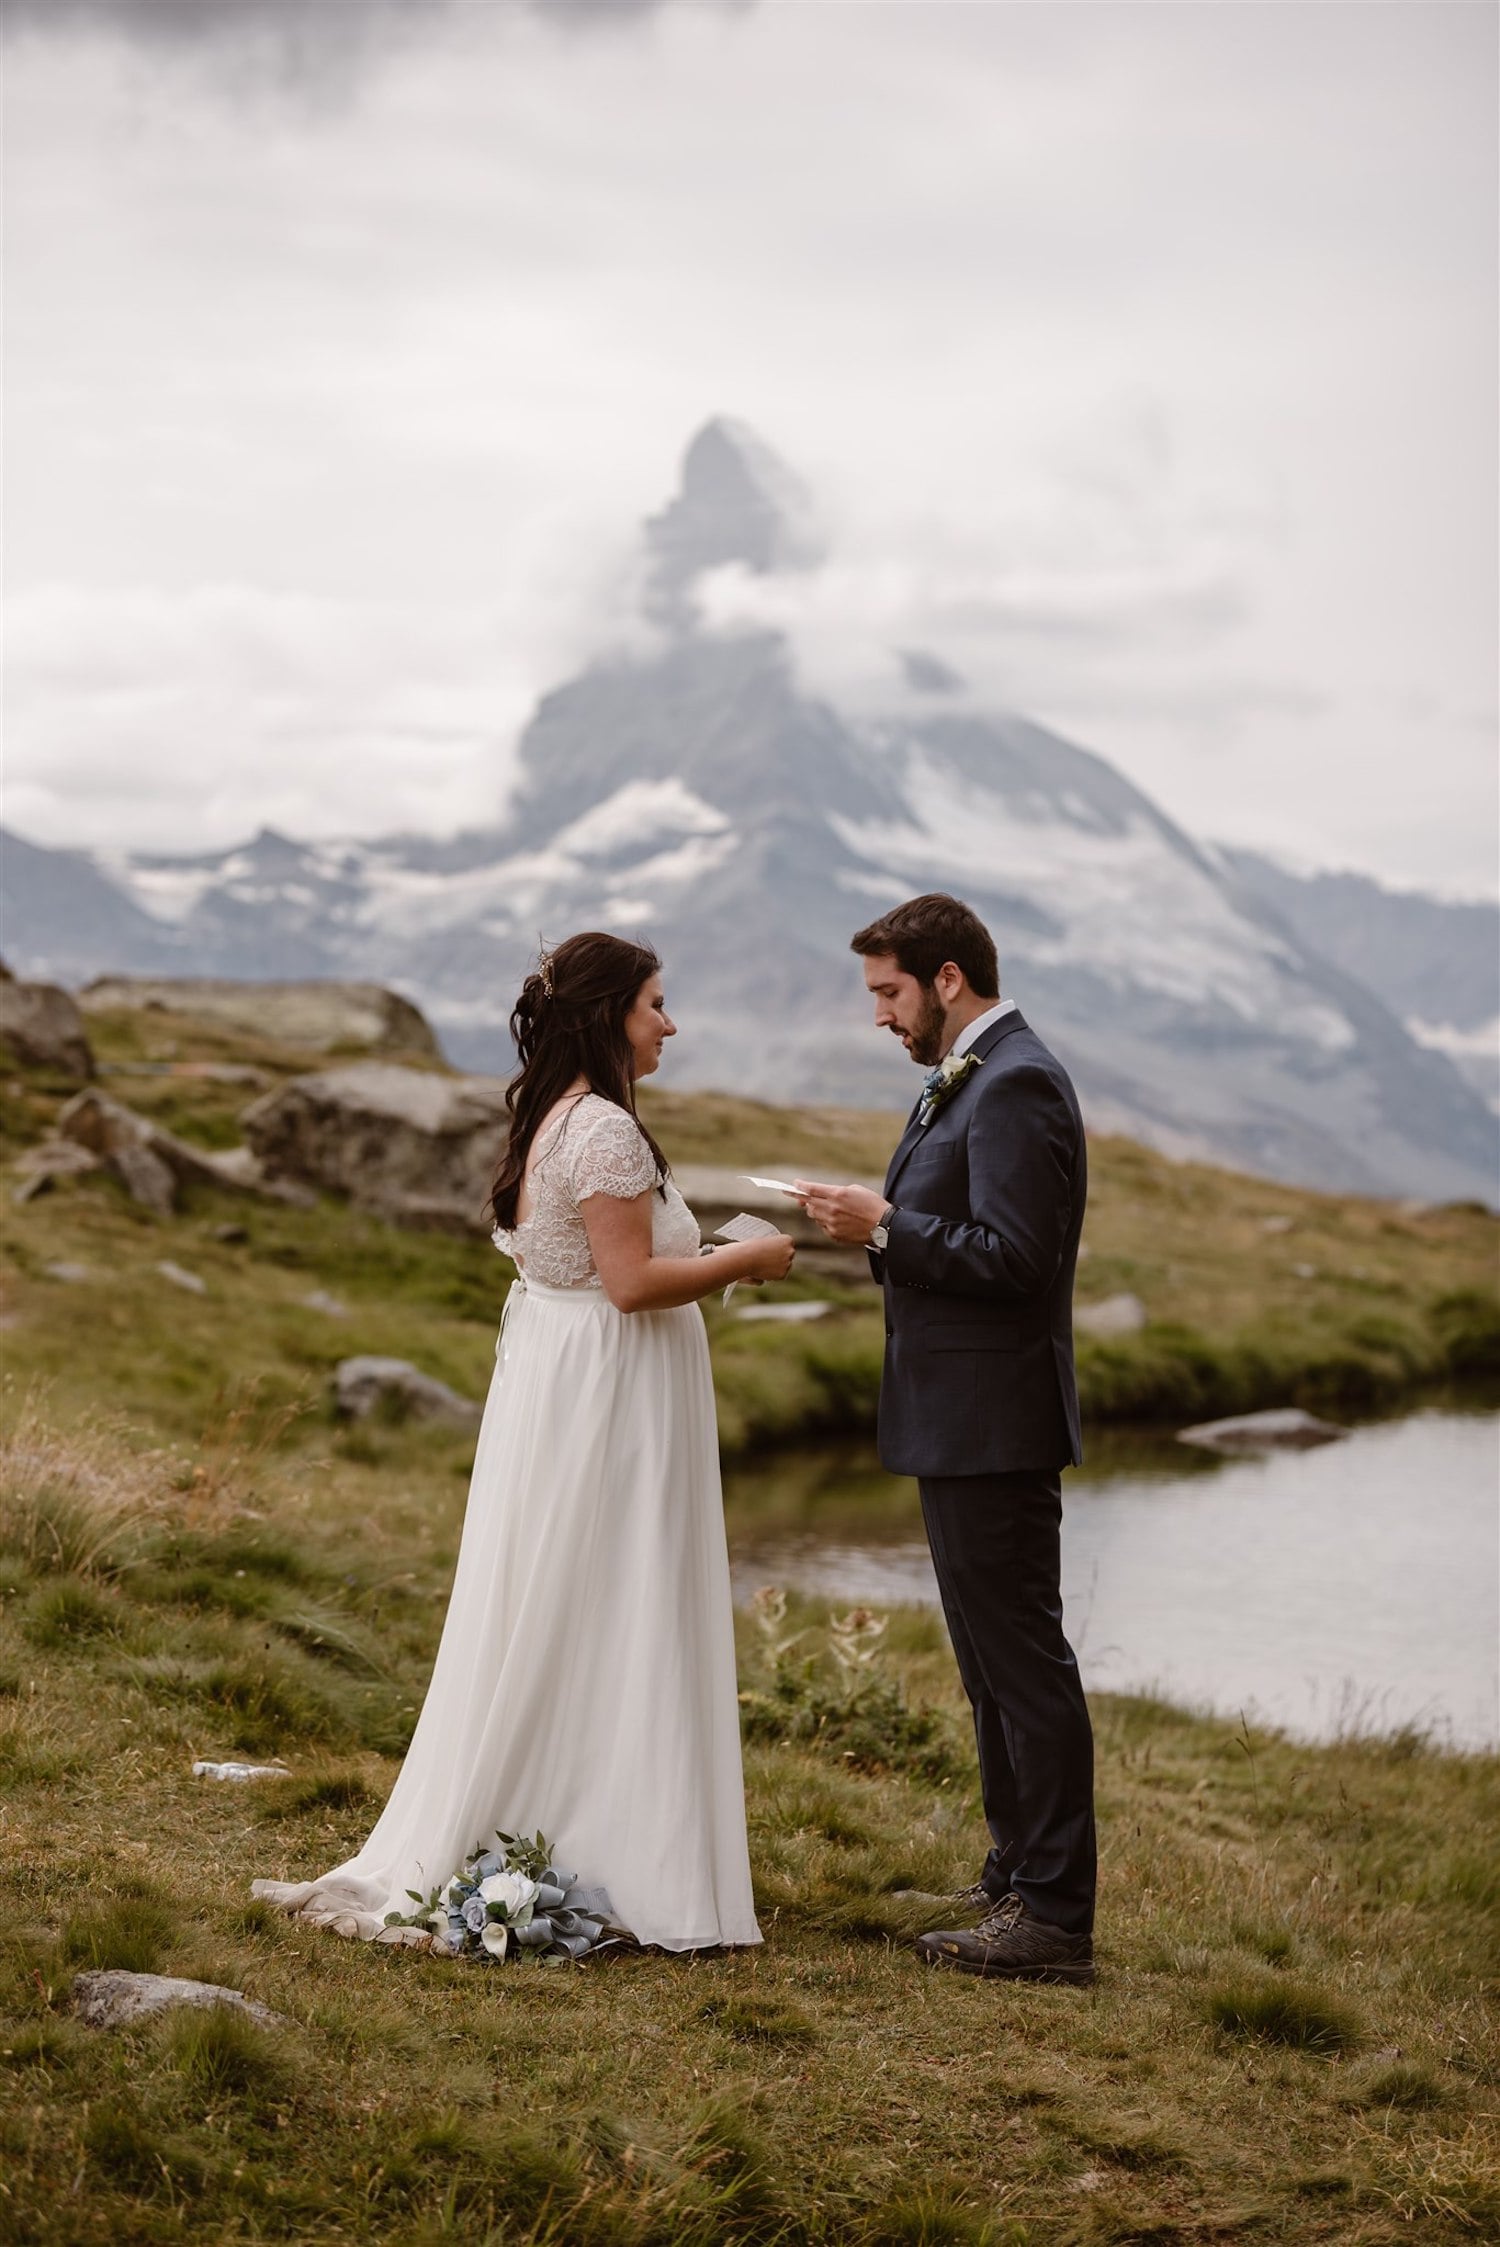 Couple exchanging vows in front of the Matterhorn in Zermatt